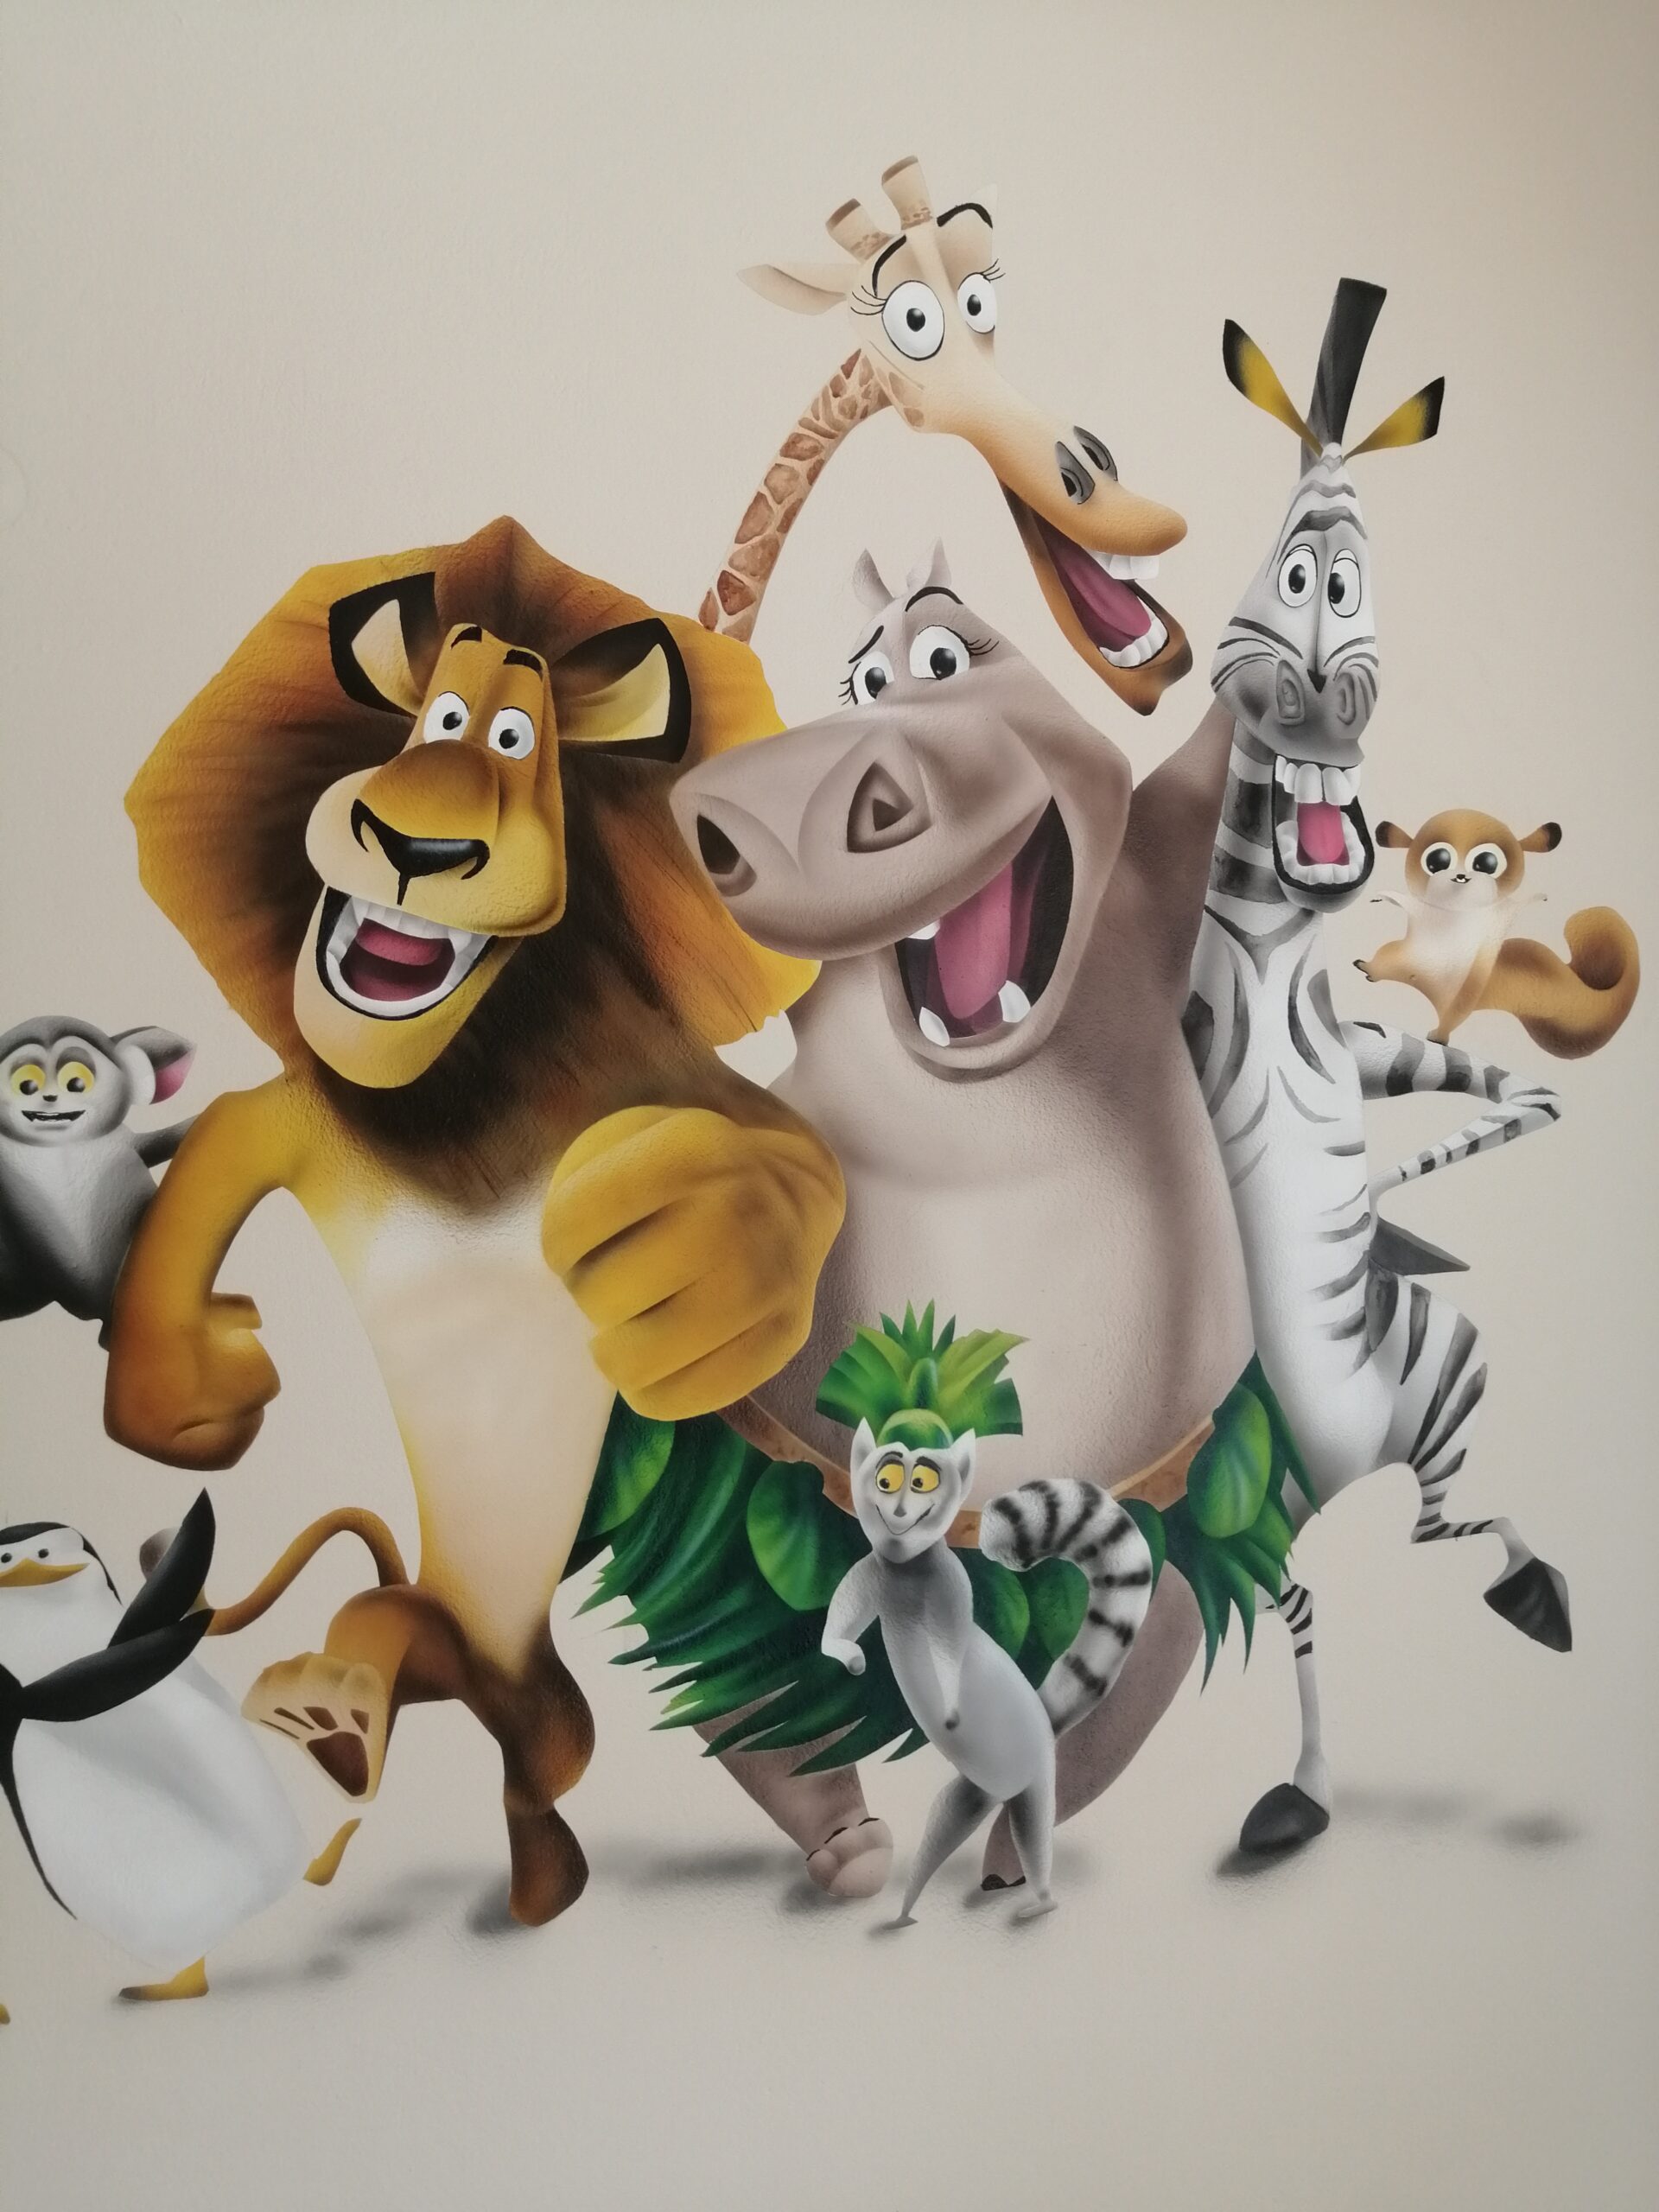 ζωγραφική σε παιδικό δωμάτιο με θέμα την ταινία Μαδαγασκάρη